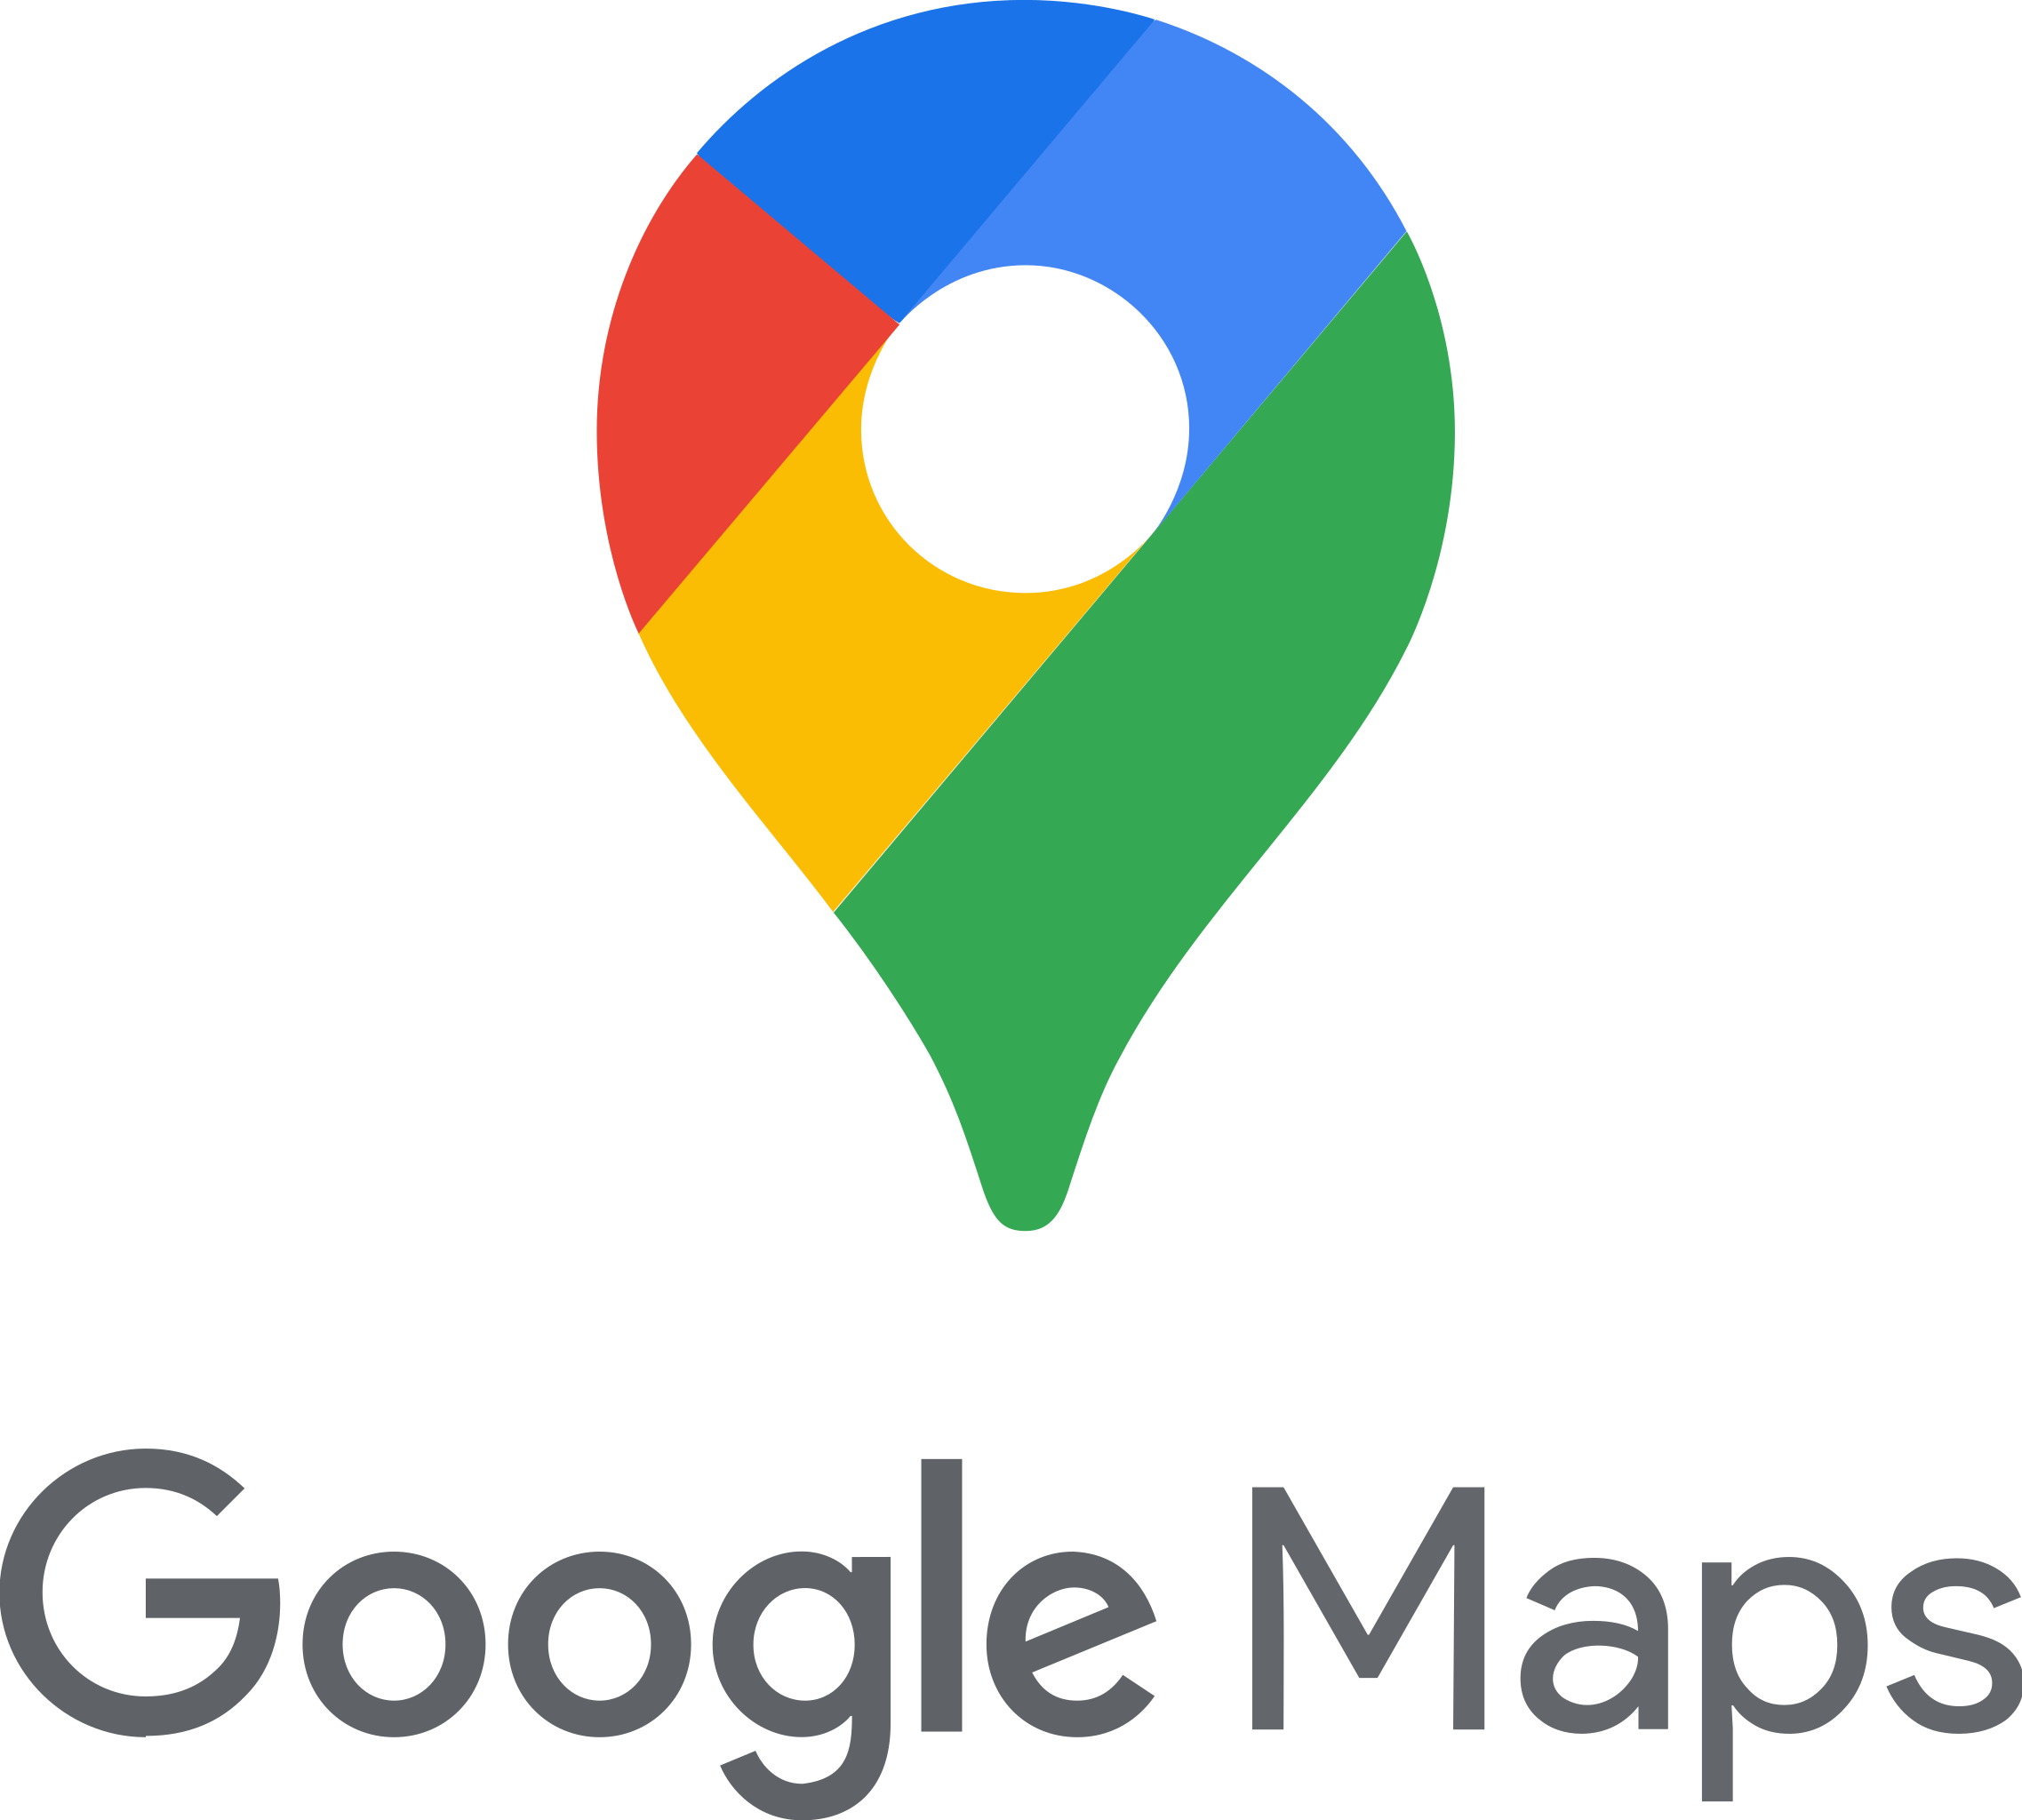 Find a hostel in Belgrade using Google Maps